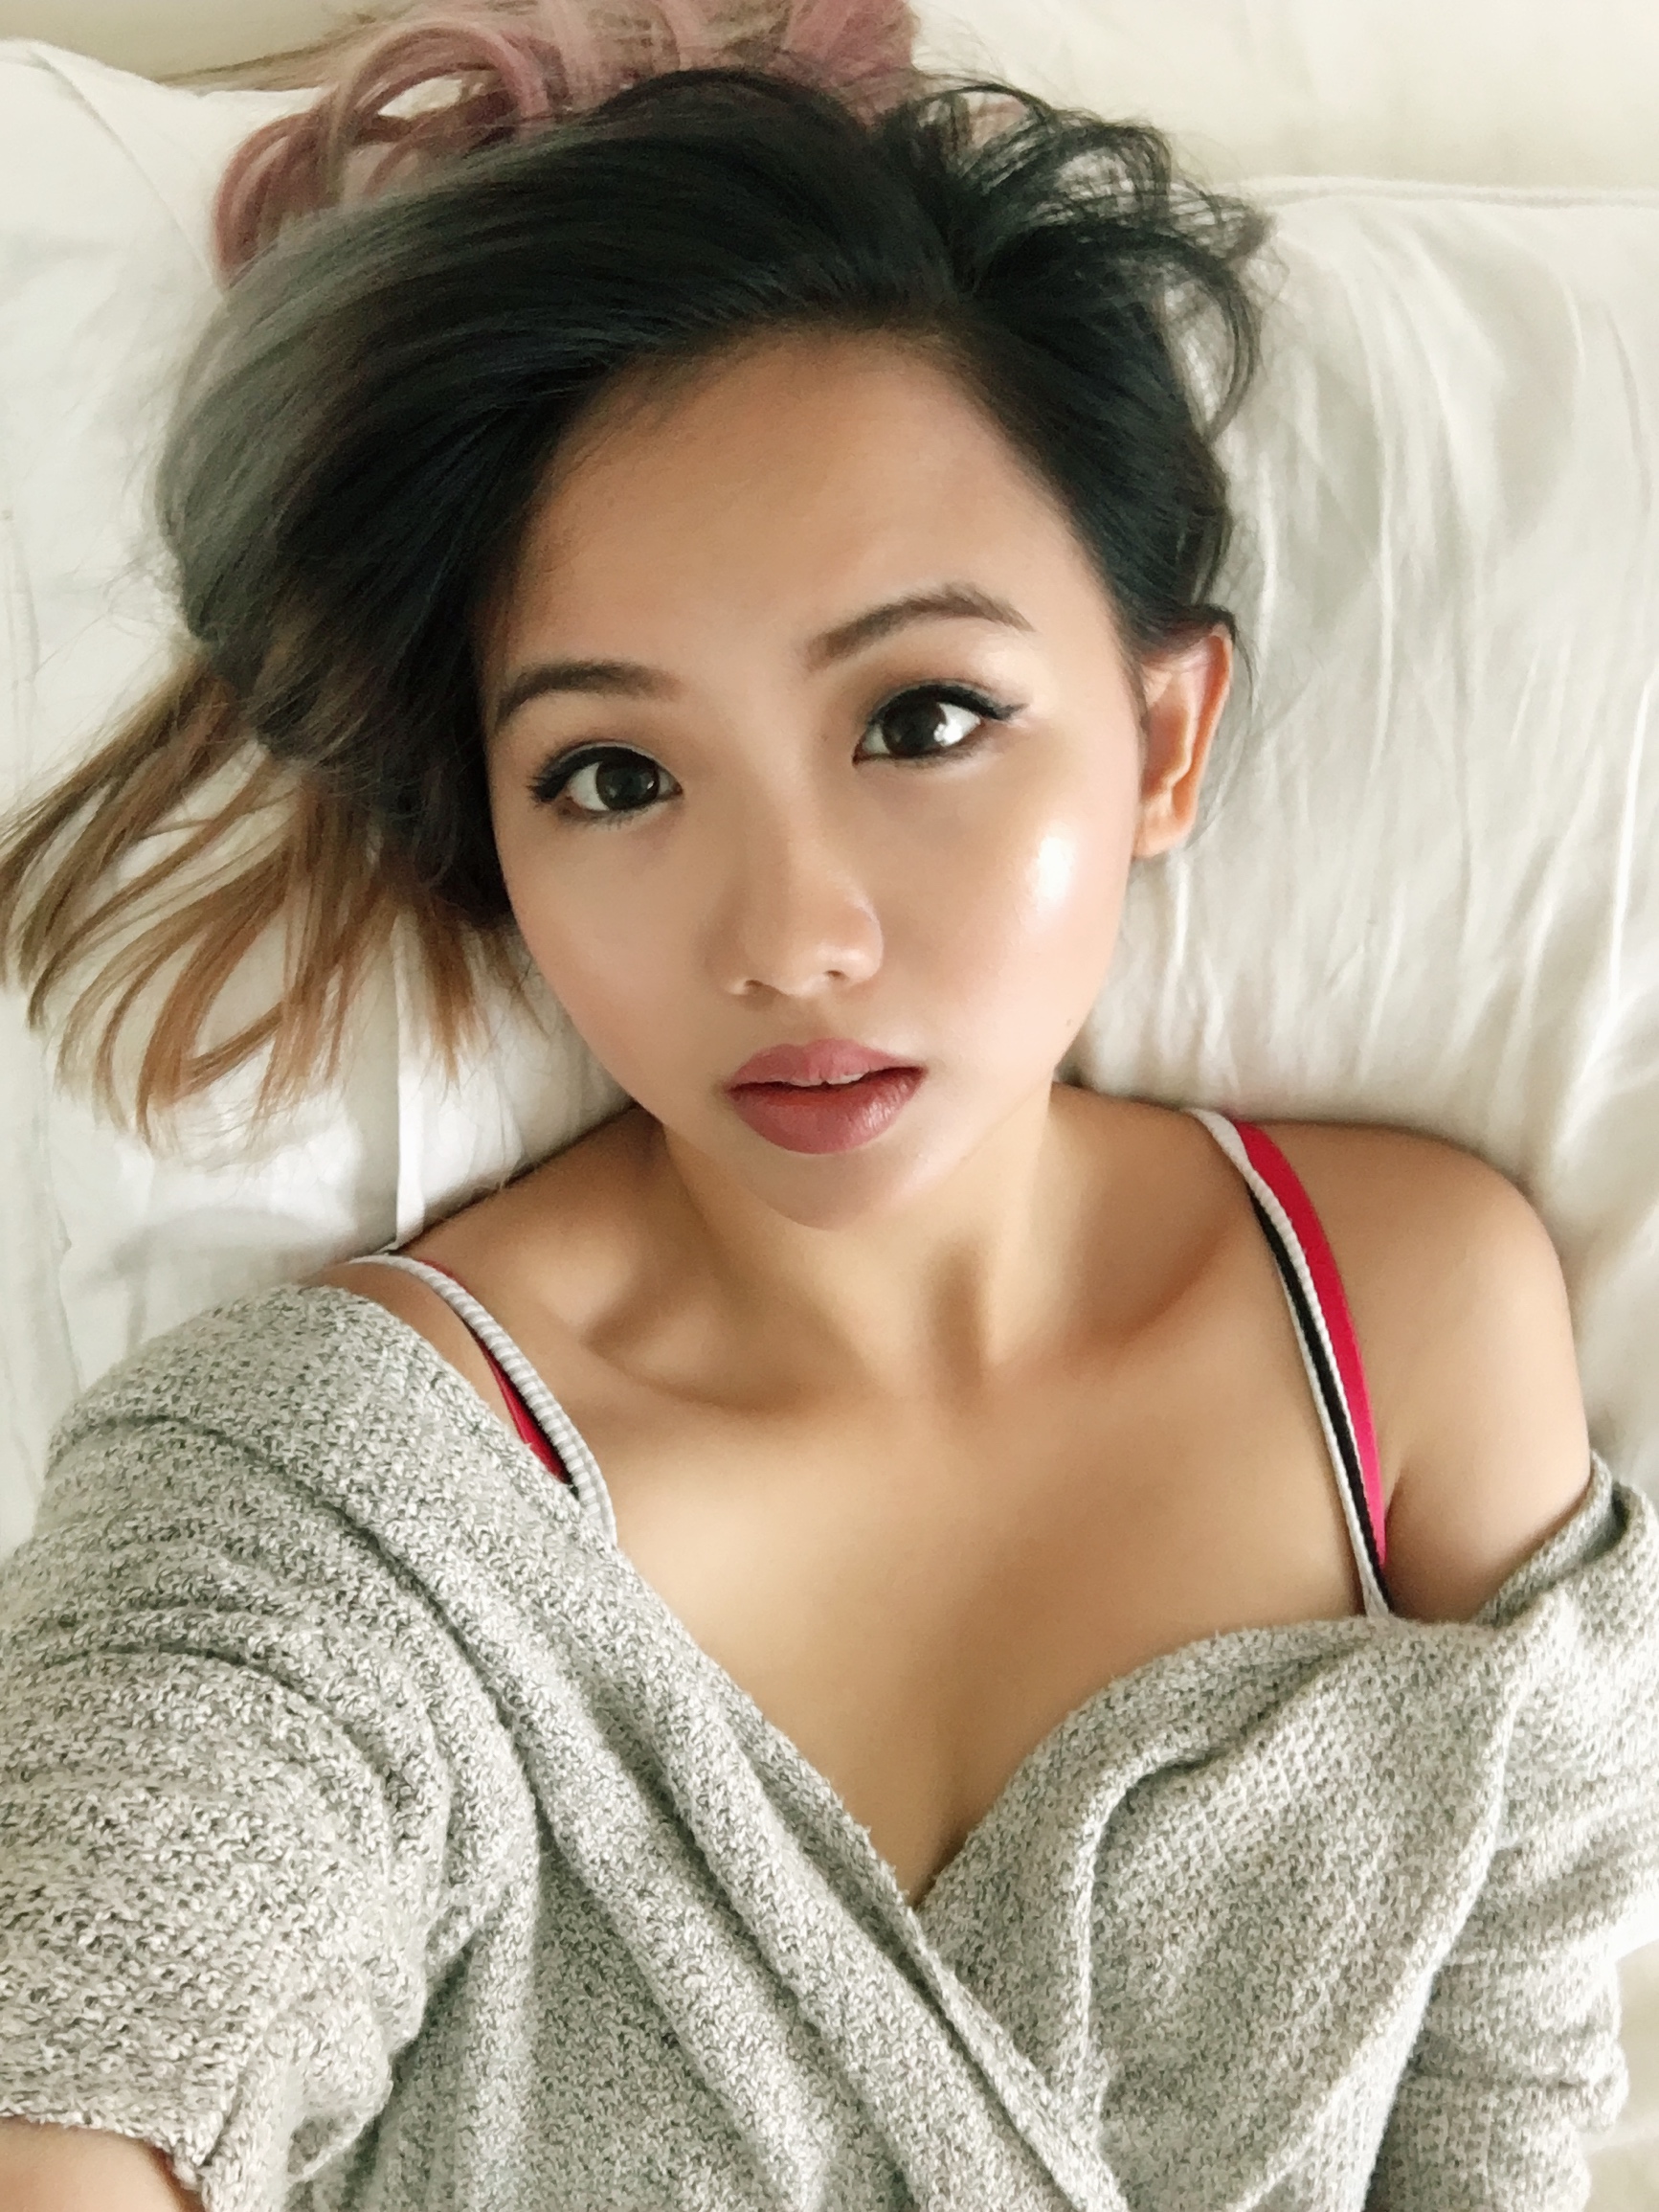 Asian cam girl